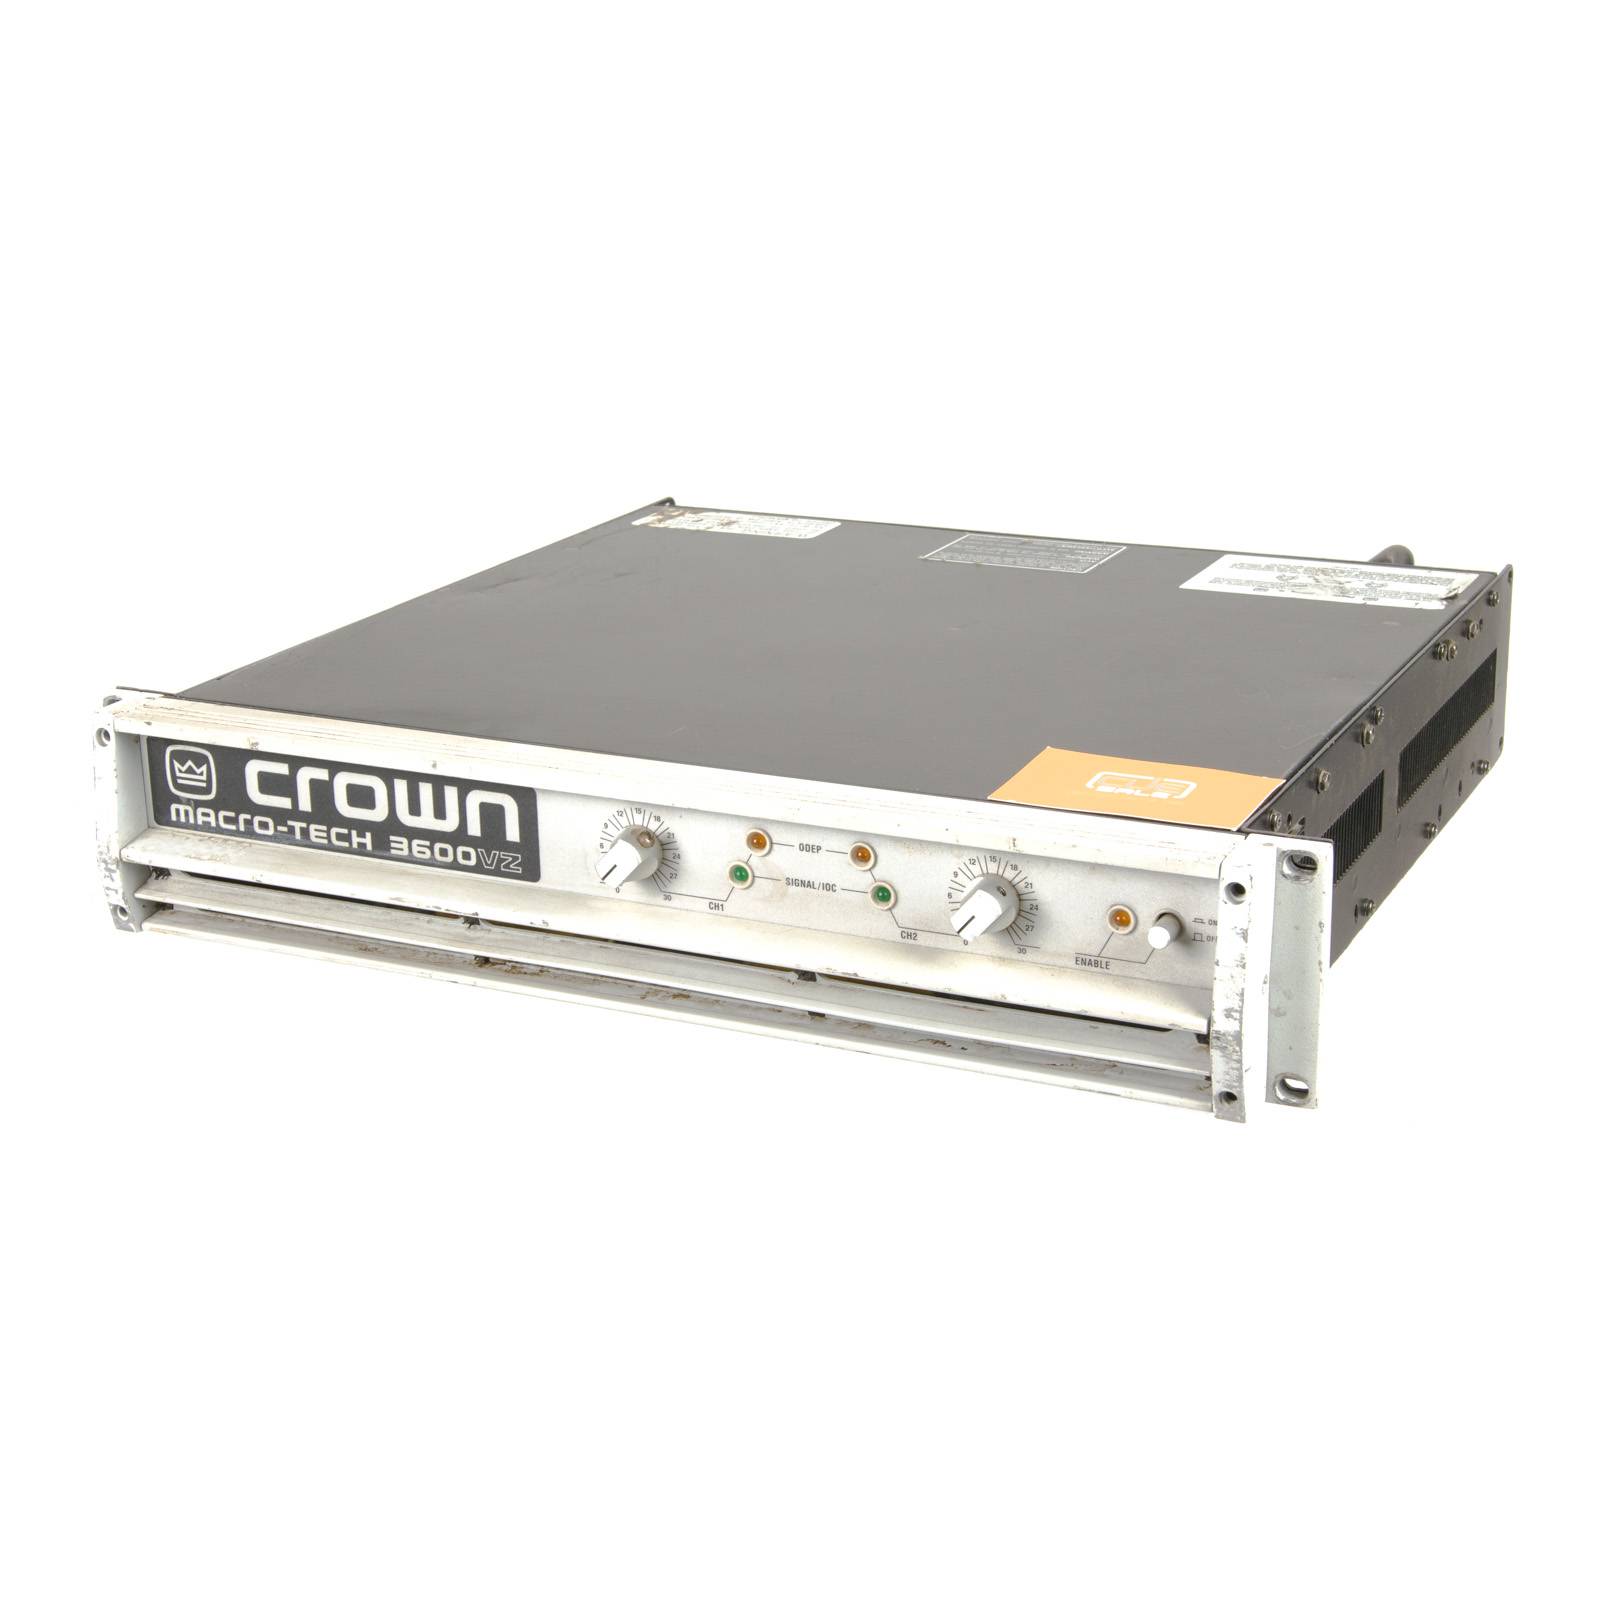 Crown Macro-Tech 3600VZ